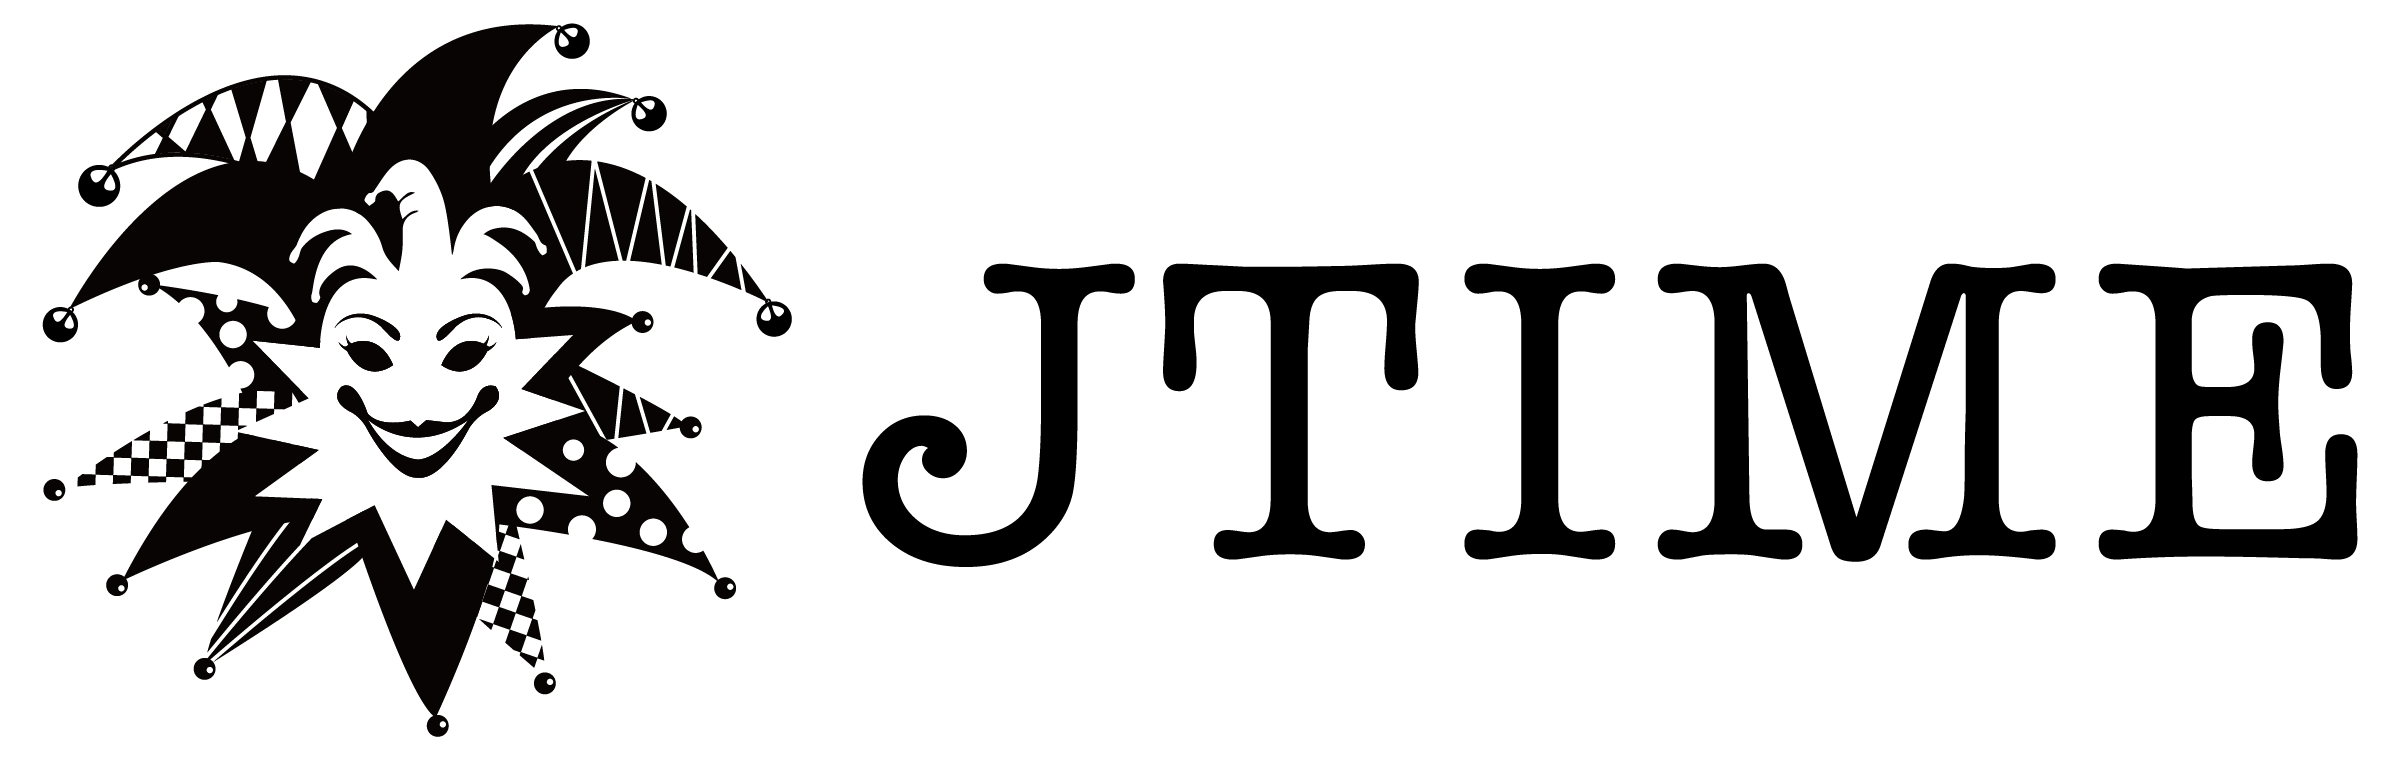 jtime-logo